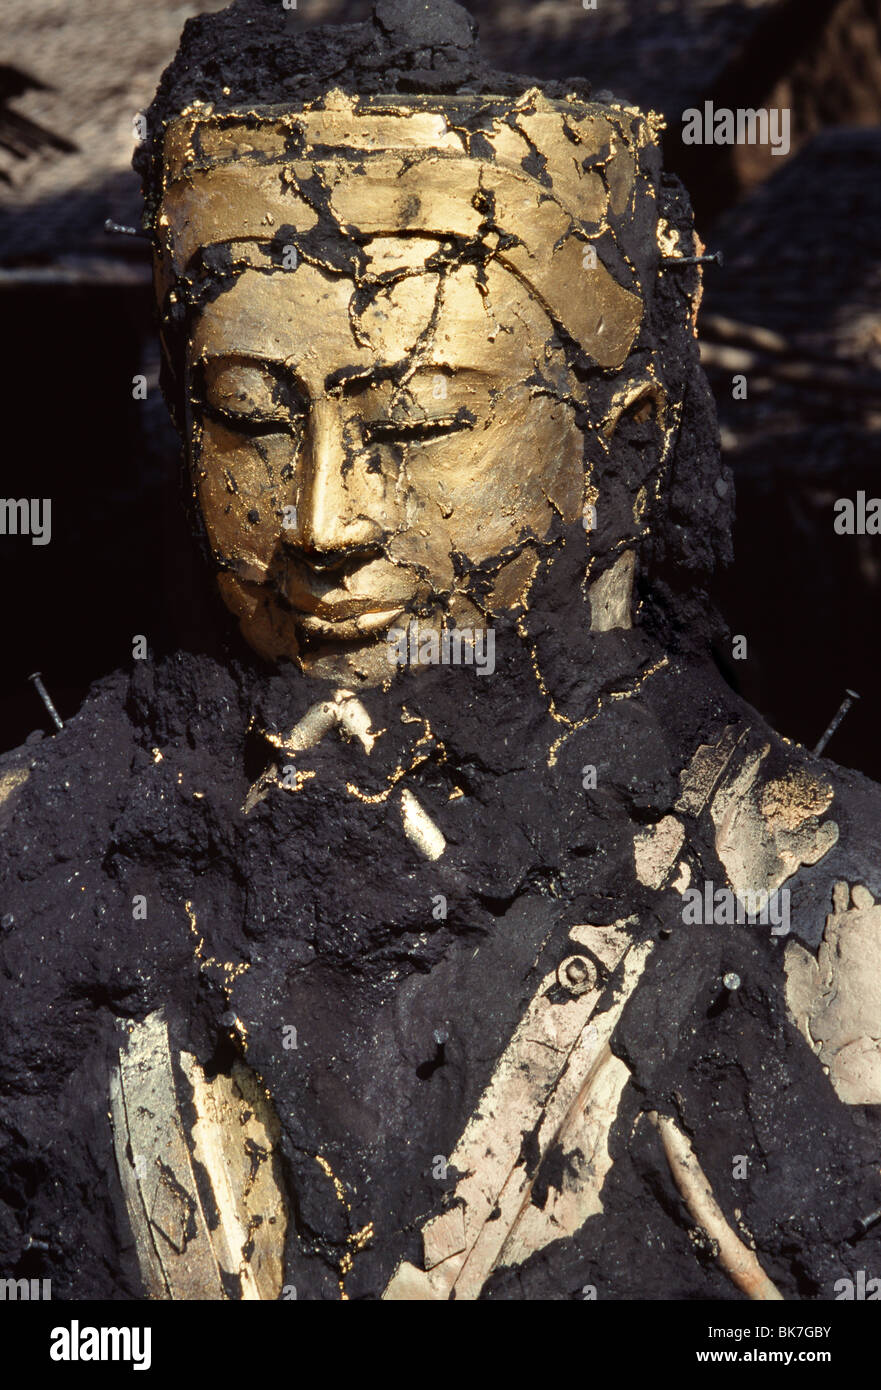 El rostro de Buda emergiendo de las cenizas, la fundición de bronce, Mandalay, Myanmar (Birmania), Asia Foto de stock